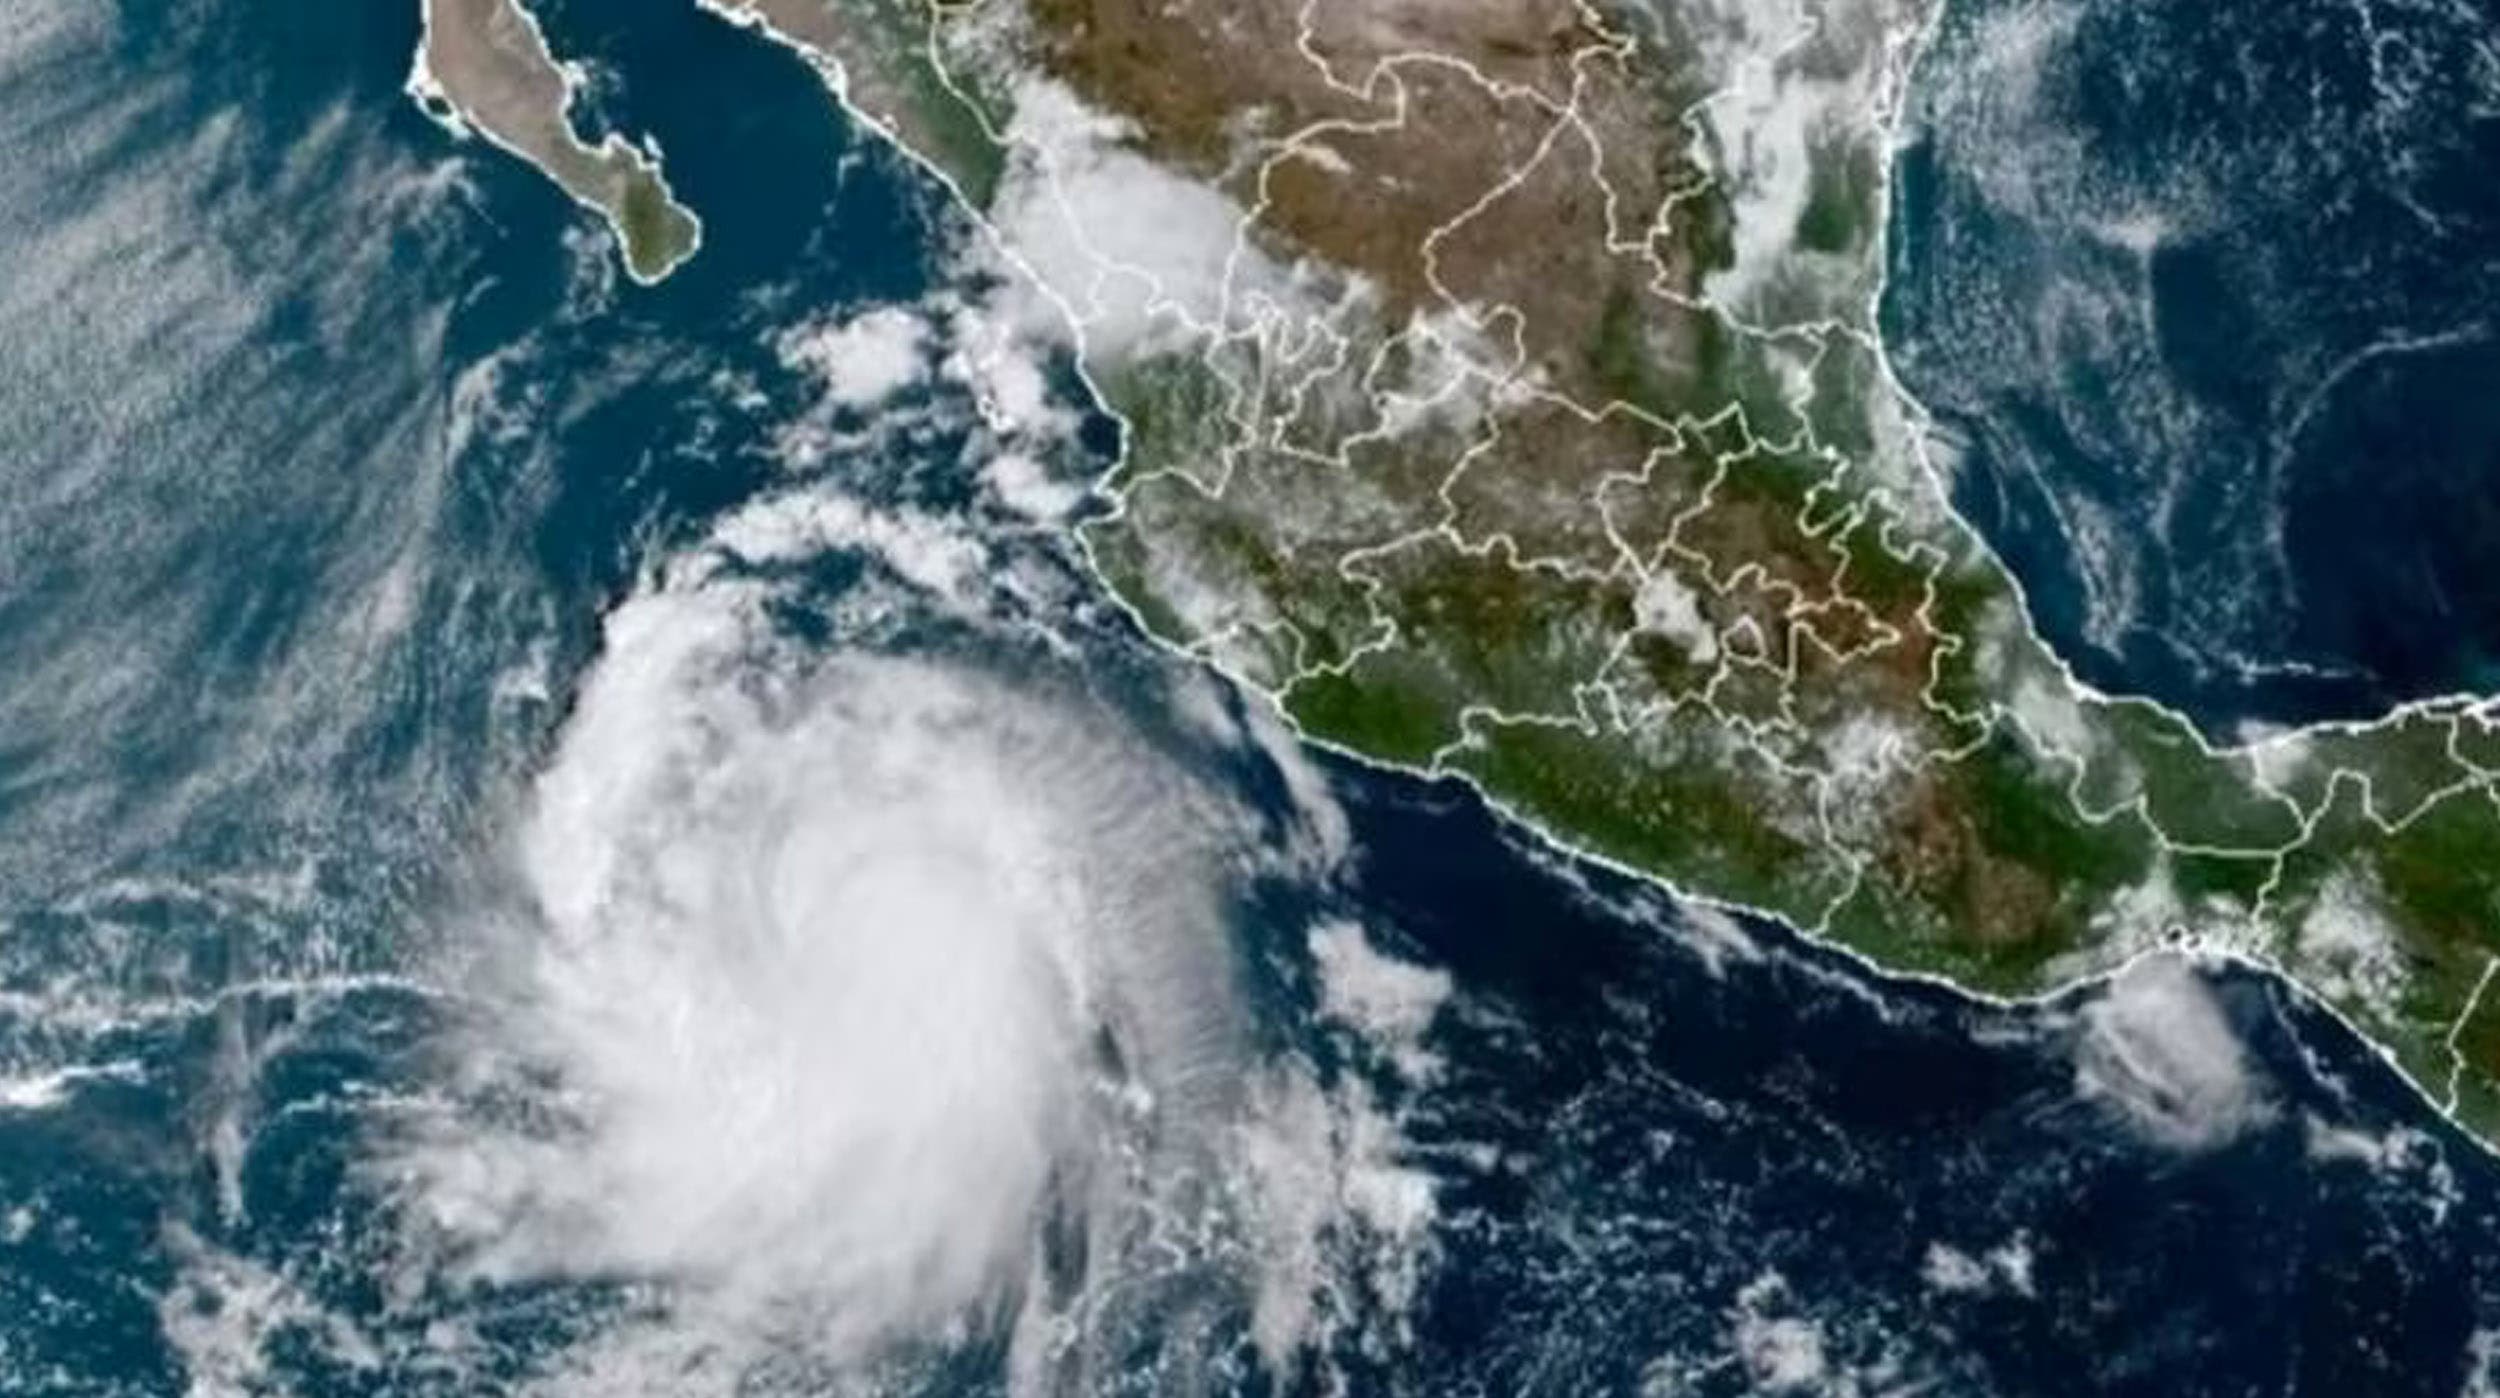 Tormenta tropical Norma se forma en el Pacífico Mexicano: Pronóstico de lluvias y alertas en varias entidades 